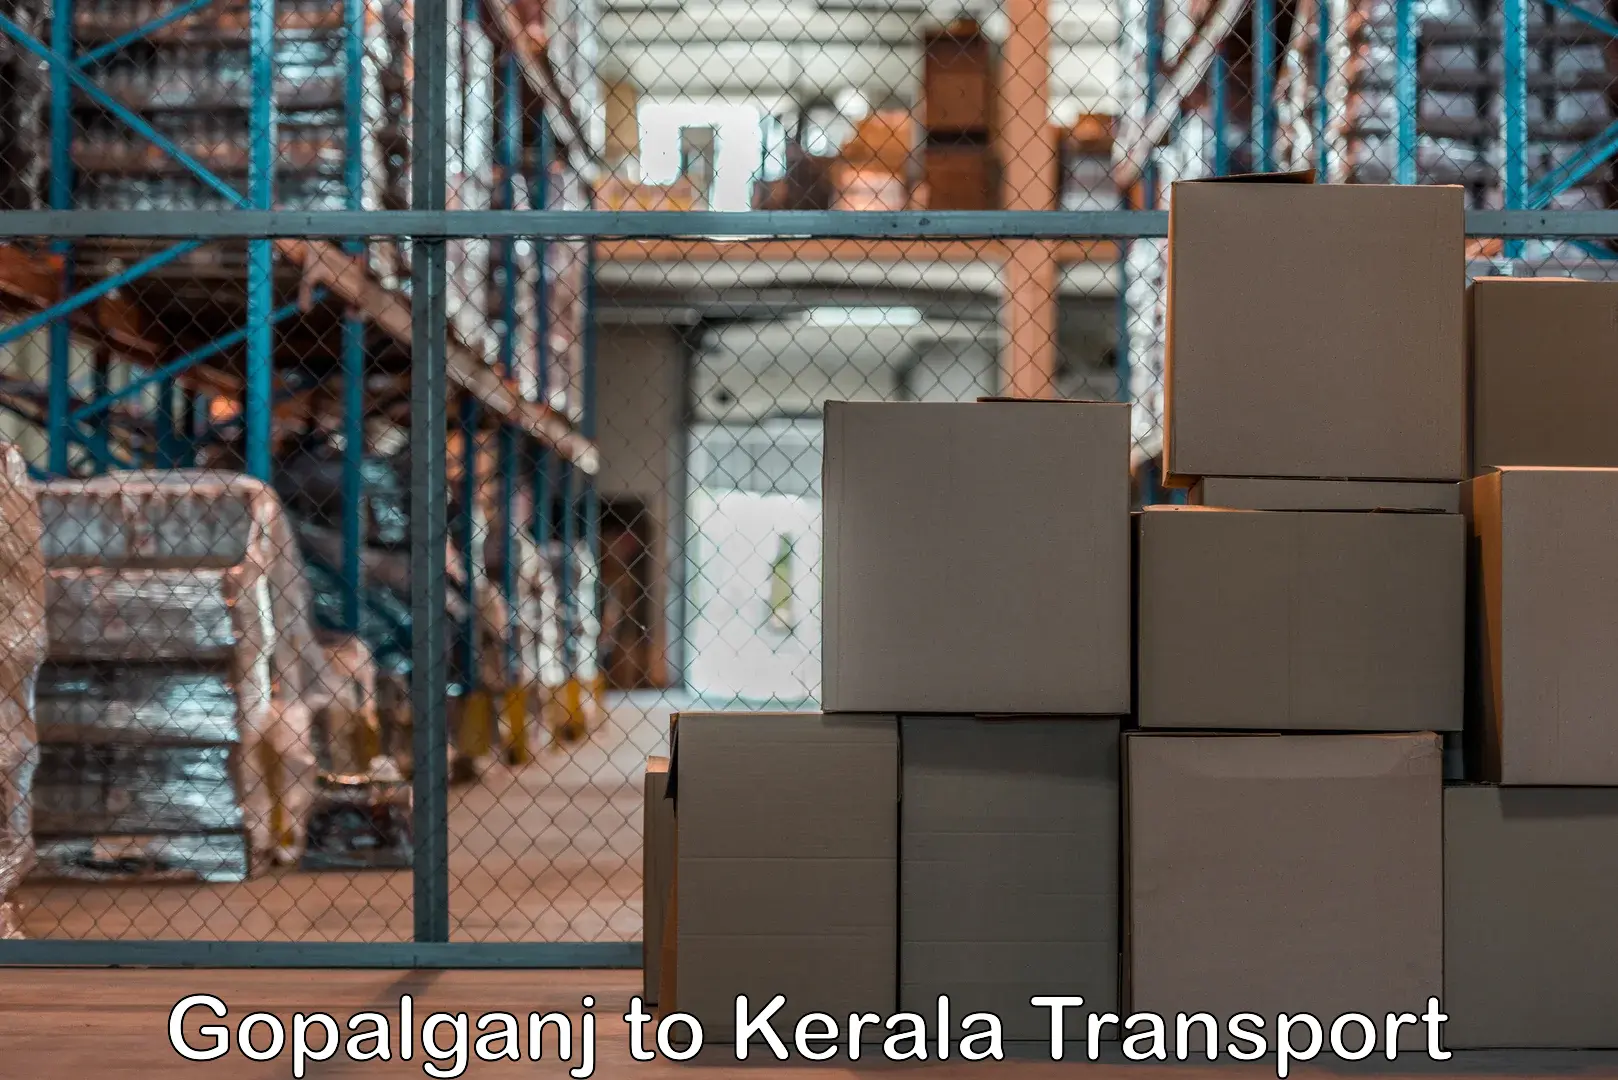 All India transport service Gopalganj to Angamaly